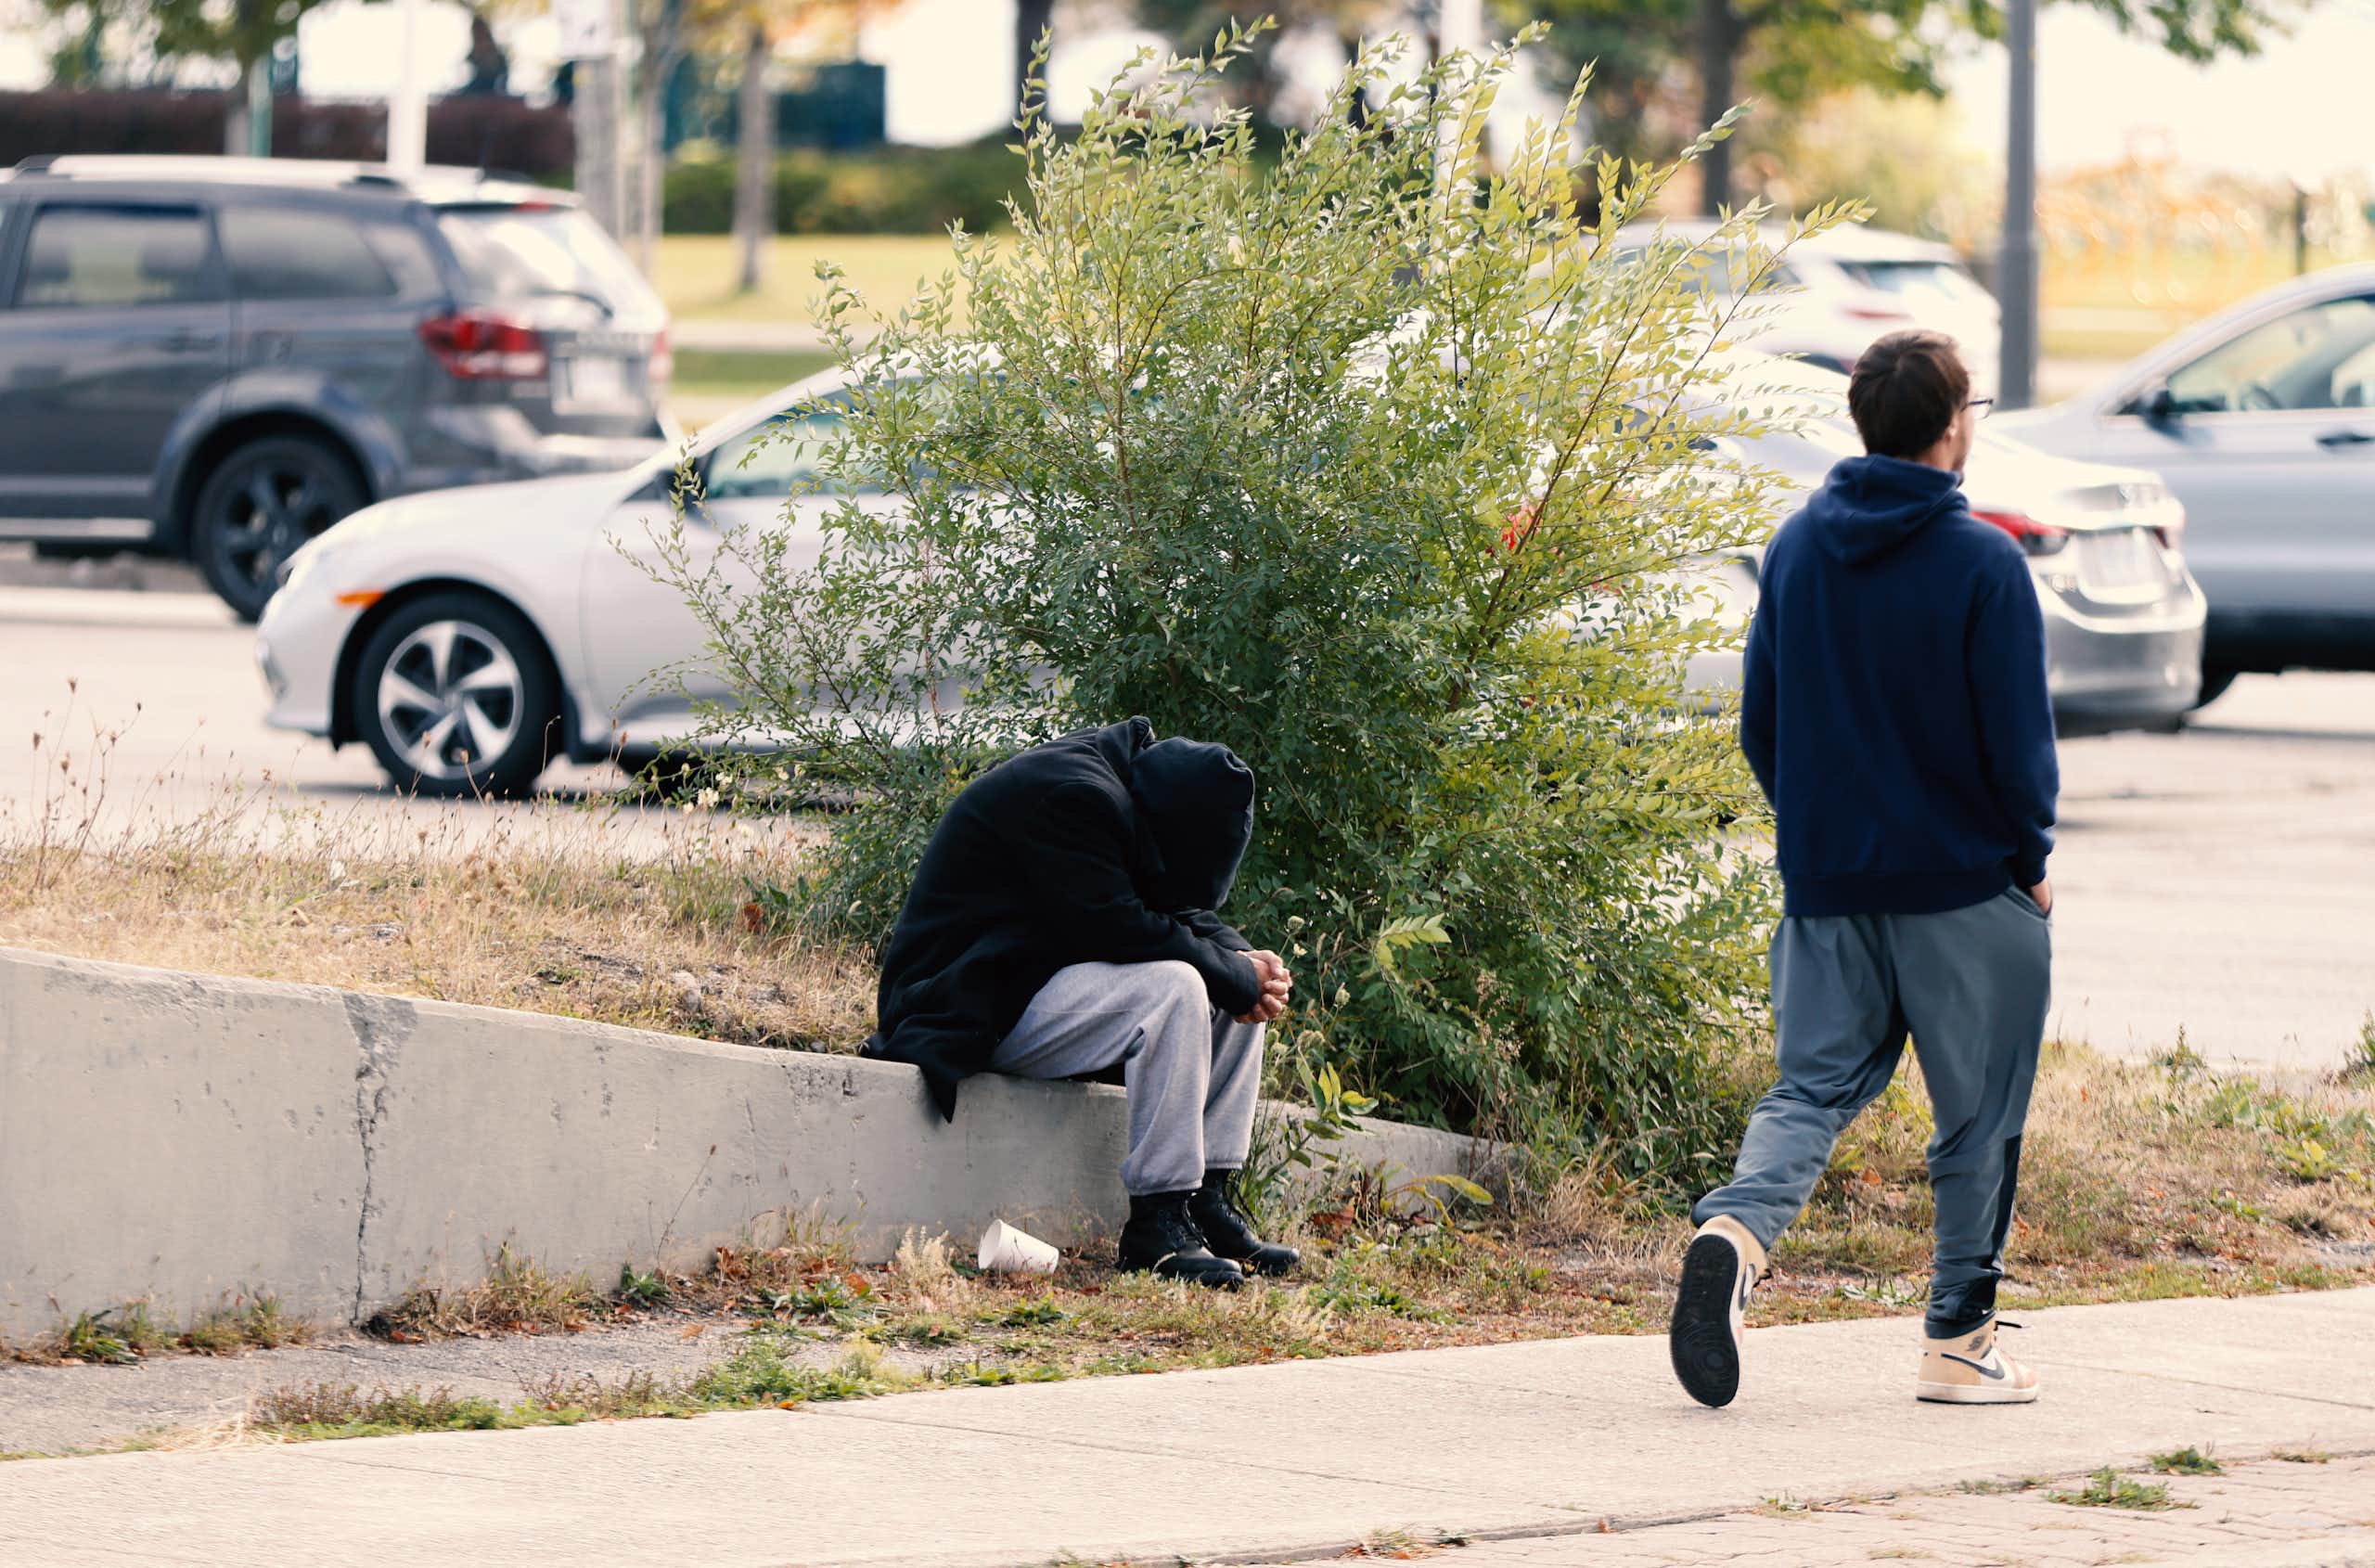 Un homme passe devant une personne recroquevillée sur le trottoir.